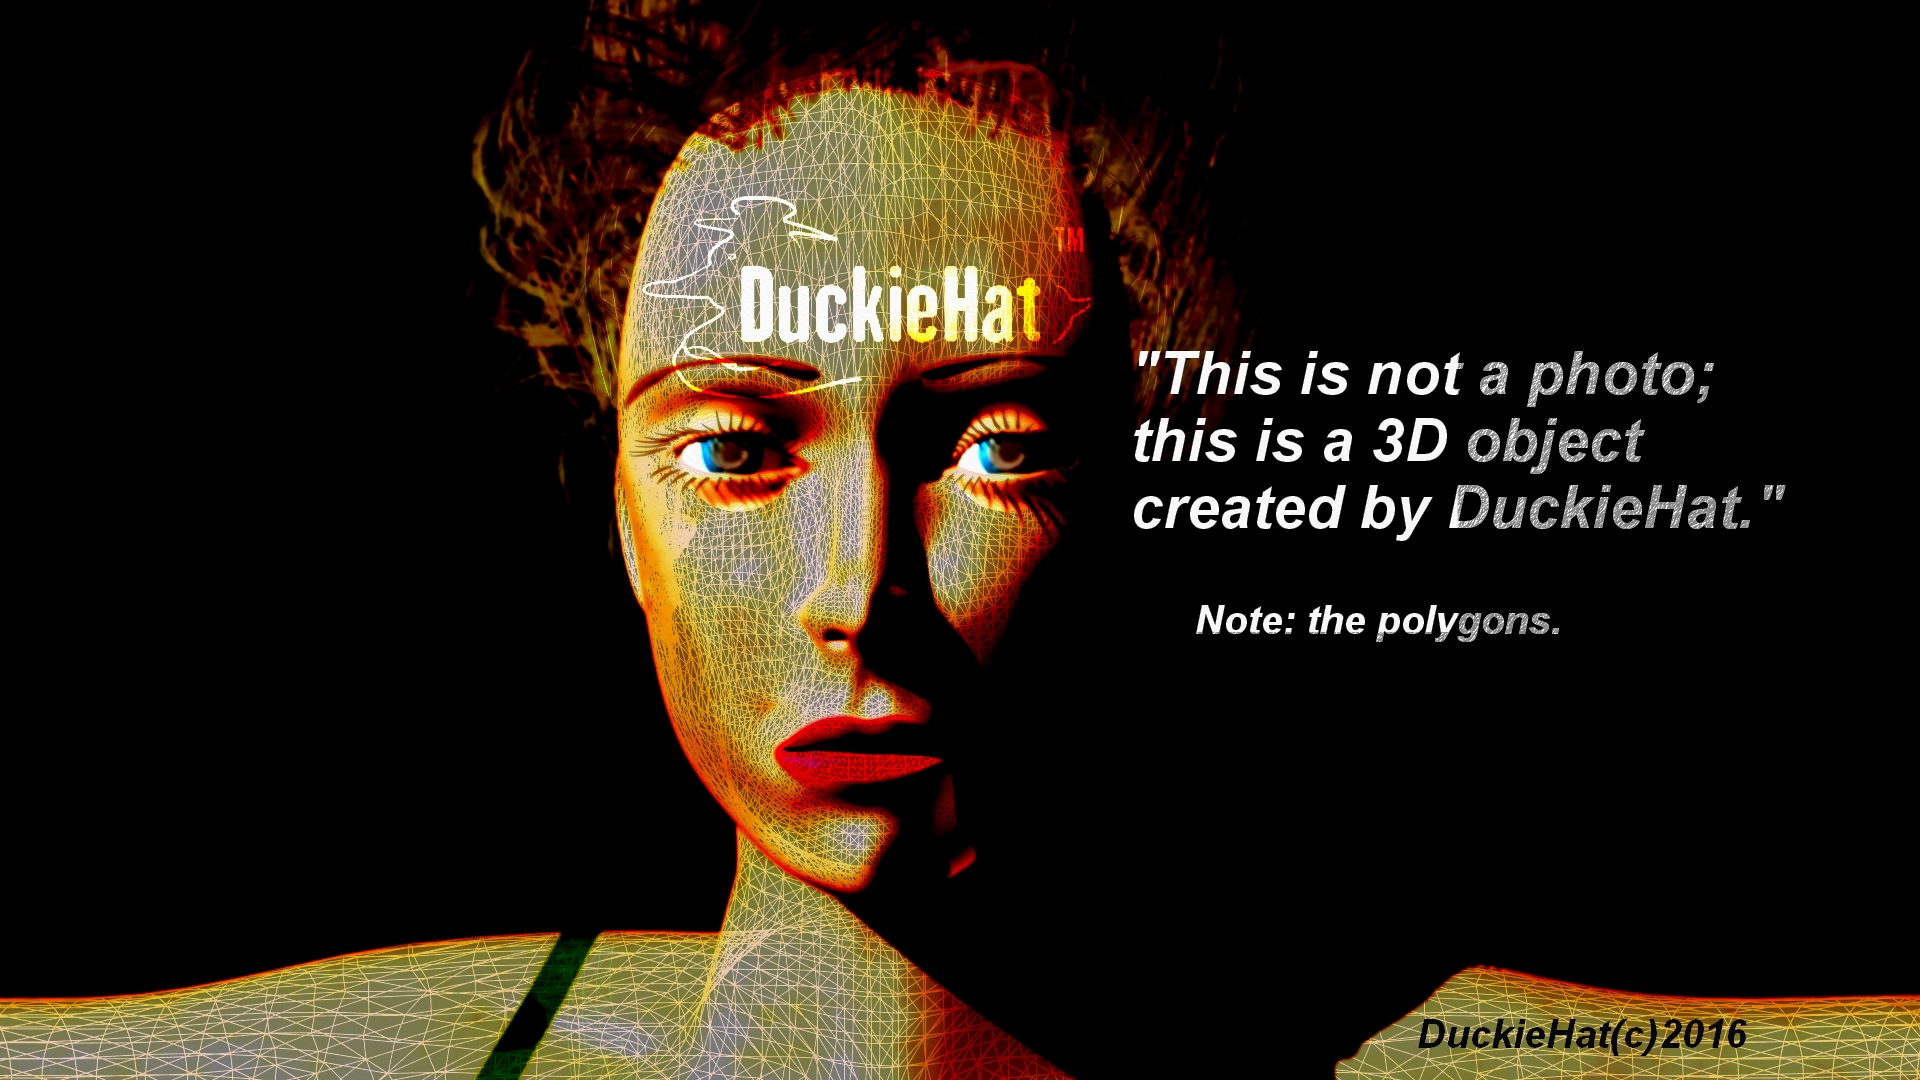 DuckieHat 3D object